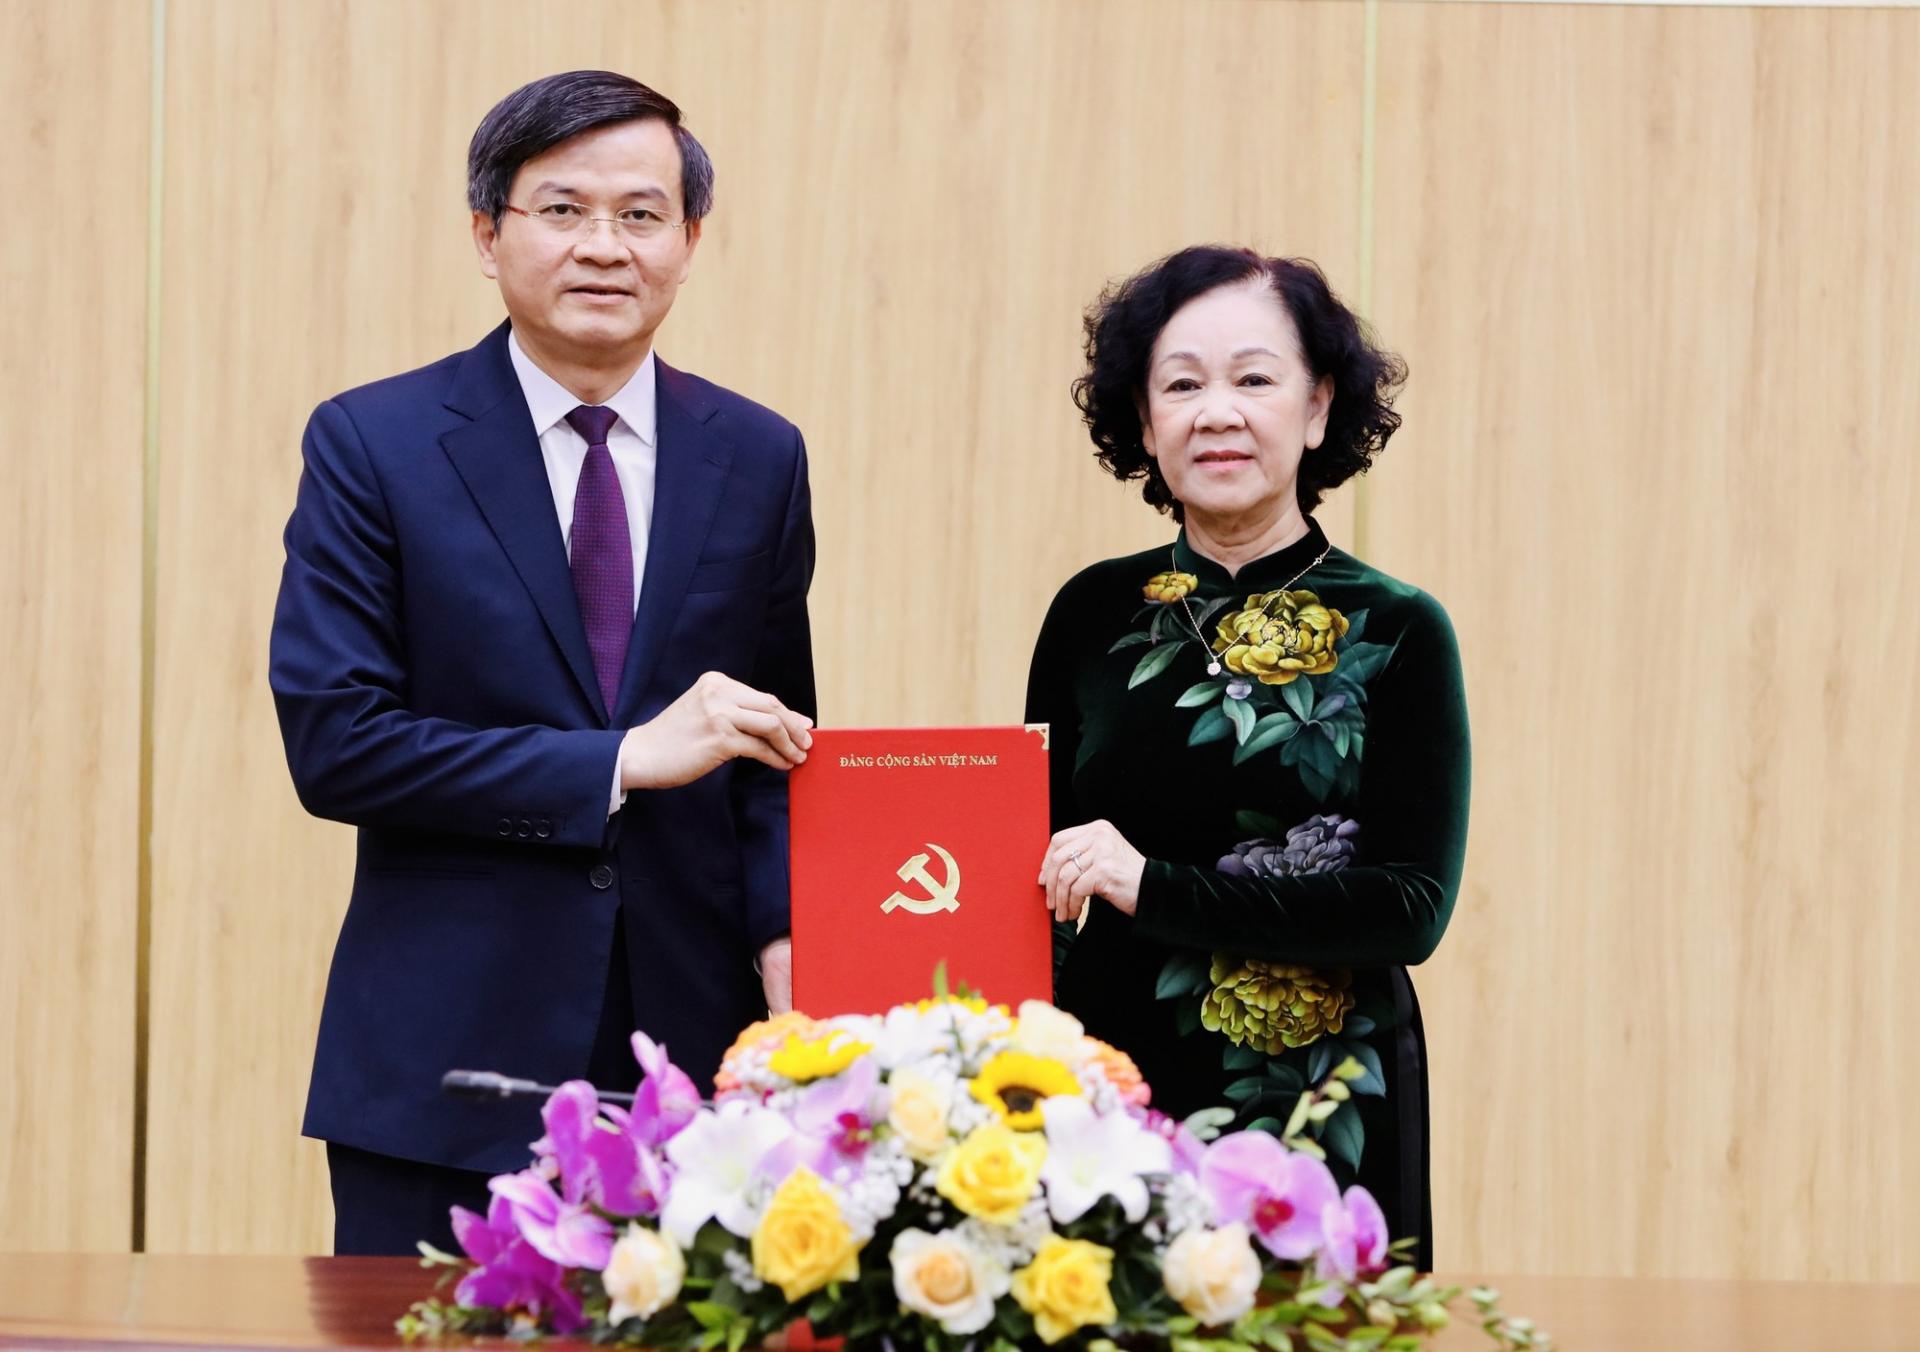 Bà Trương Thị Mai, Ủy viên Bộ Chính trị, Thường trực Ban Bí thư, Trưởng Ban tổ chức Trung ương trao quyết định của Bộ Chính trị cho ông Đoàn Minh Huấn. Ảnh: VPBMT